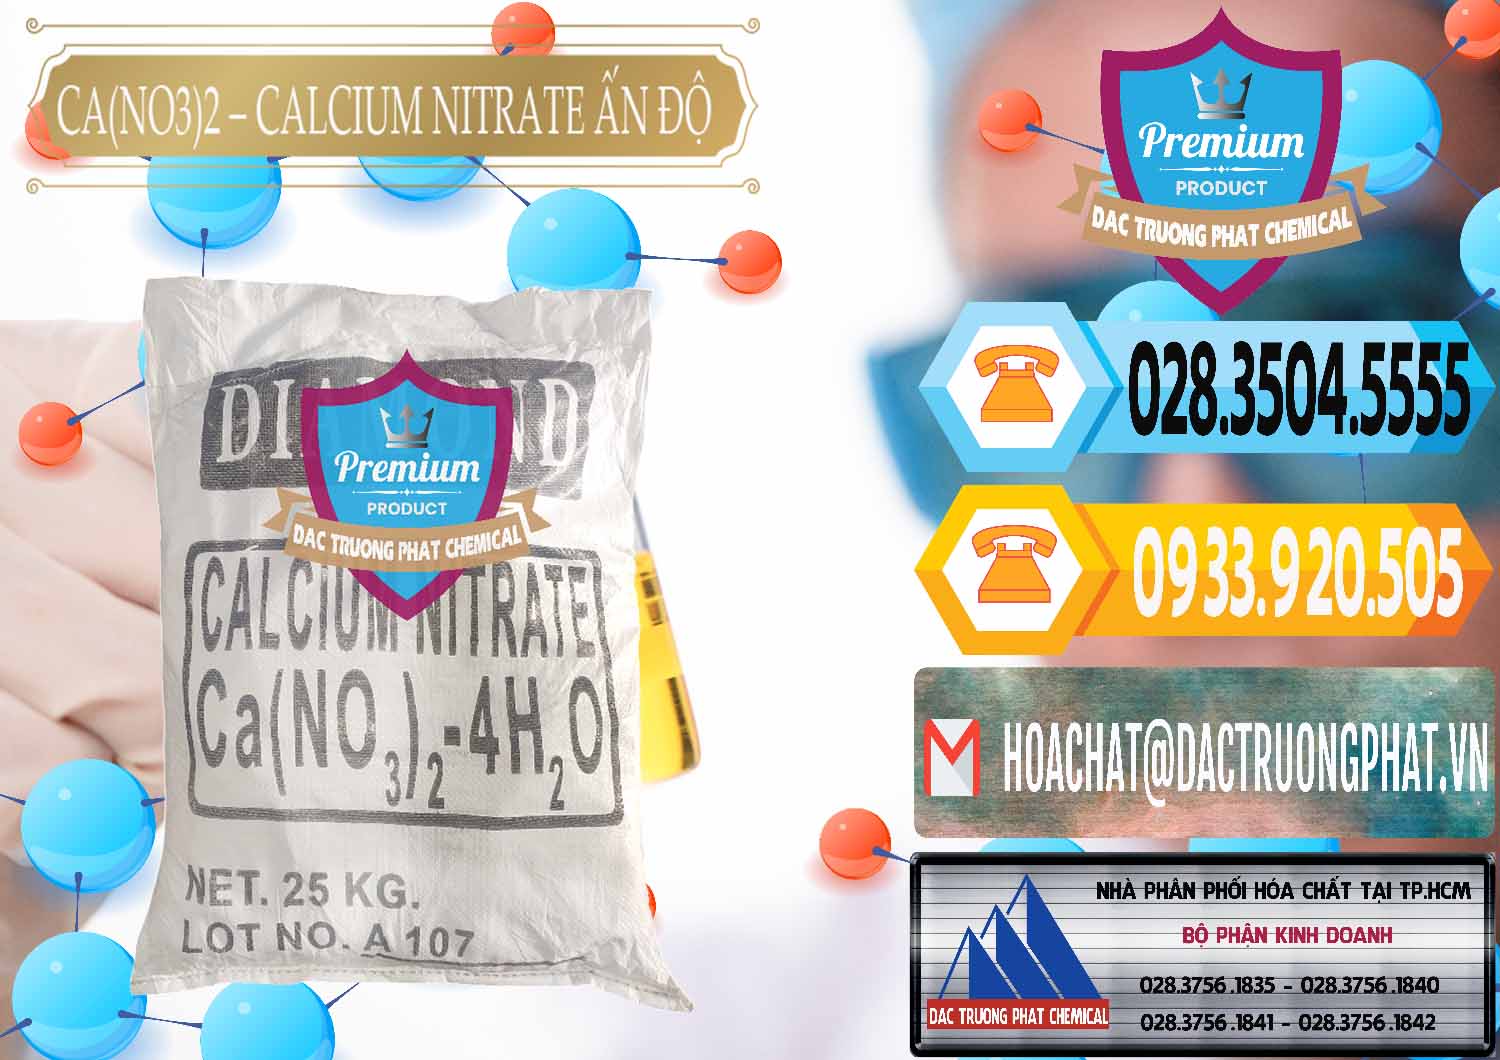 Công ty chuyên bán _ cung ứng CA(NO3)2 – Calcium Nitrate Ấn Độ India - 0038 - Đơn vị chuyên nhập khẩu và phân phối hóa chất tại TP.HCM - hoachattayrua.net